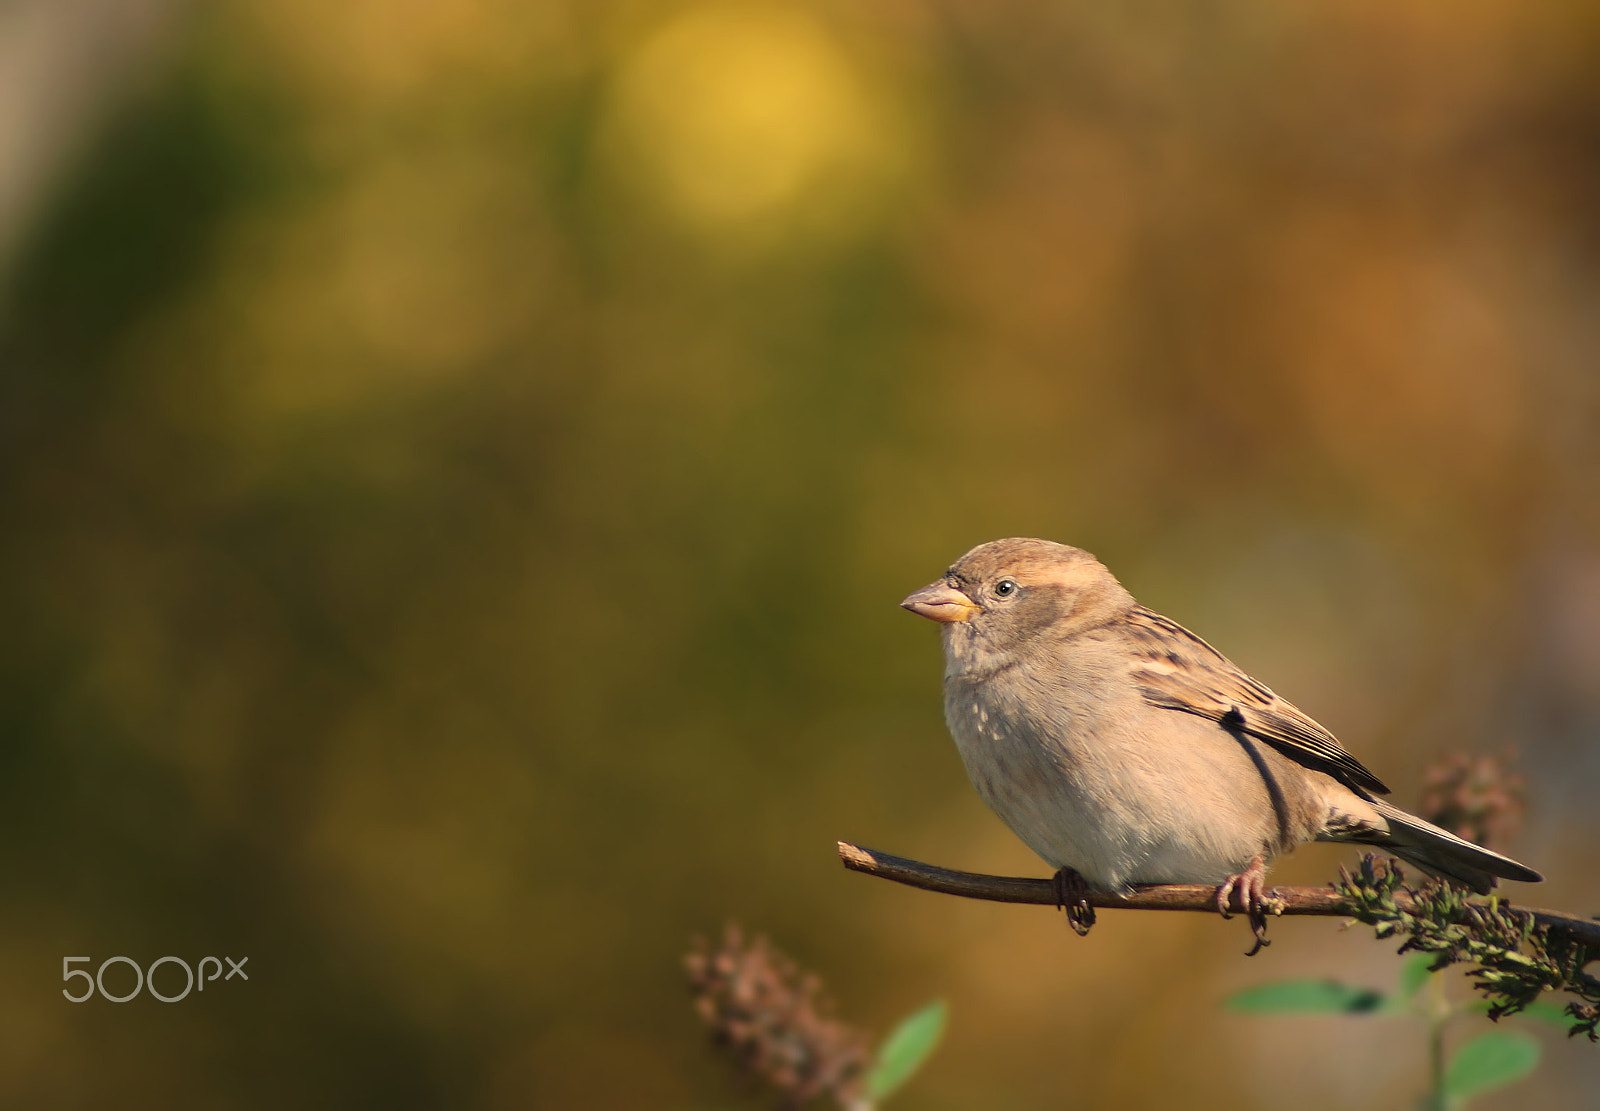 Sony SLT-A37 sample photo. House sparrow (female) photography